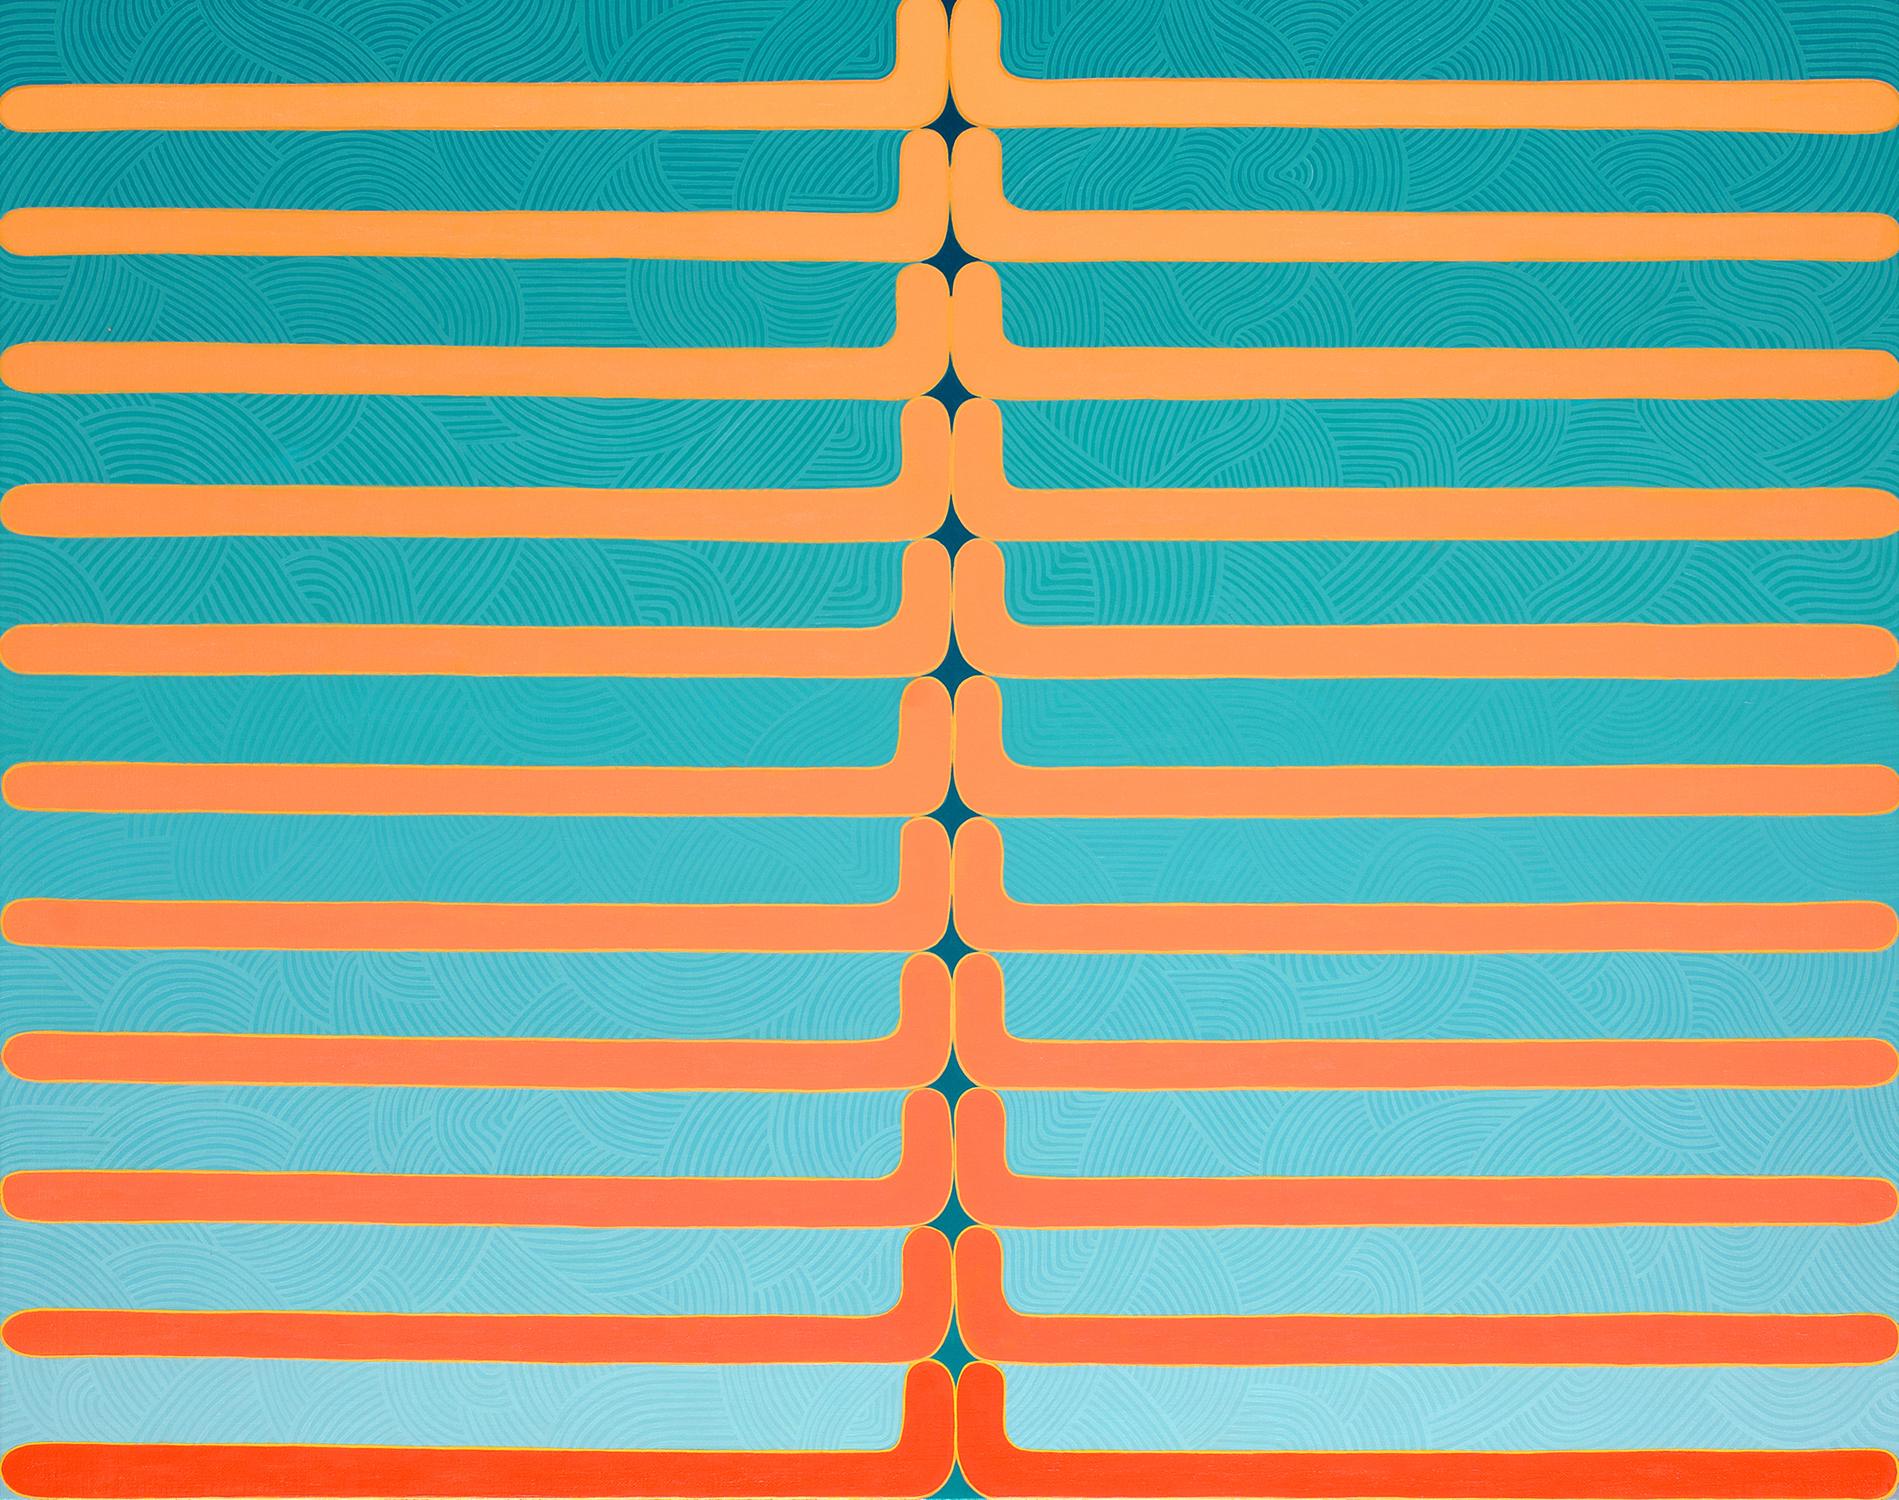 Sun Salutations, Blau Teal Orange Koralle Pfirsich Geometrische abstrakte Muster